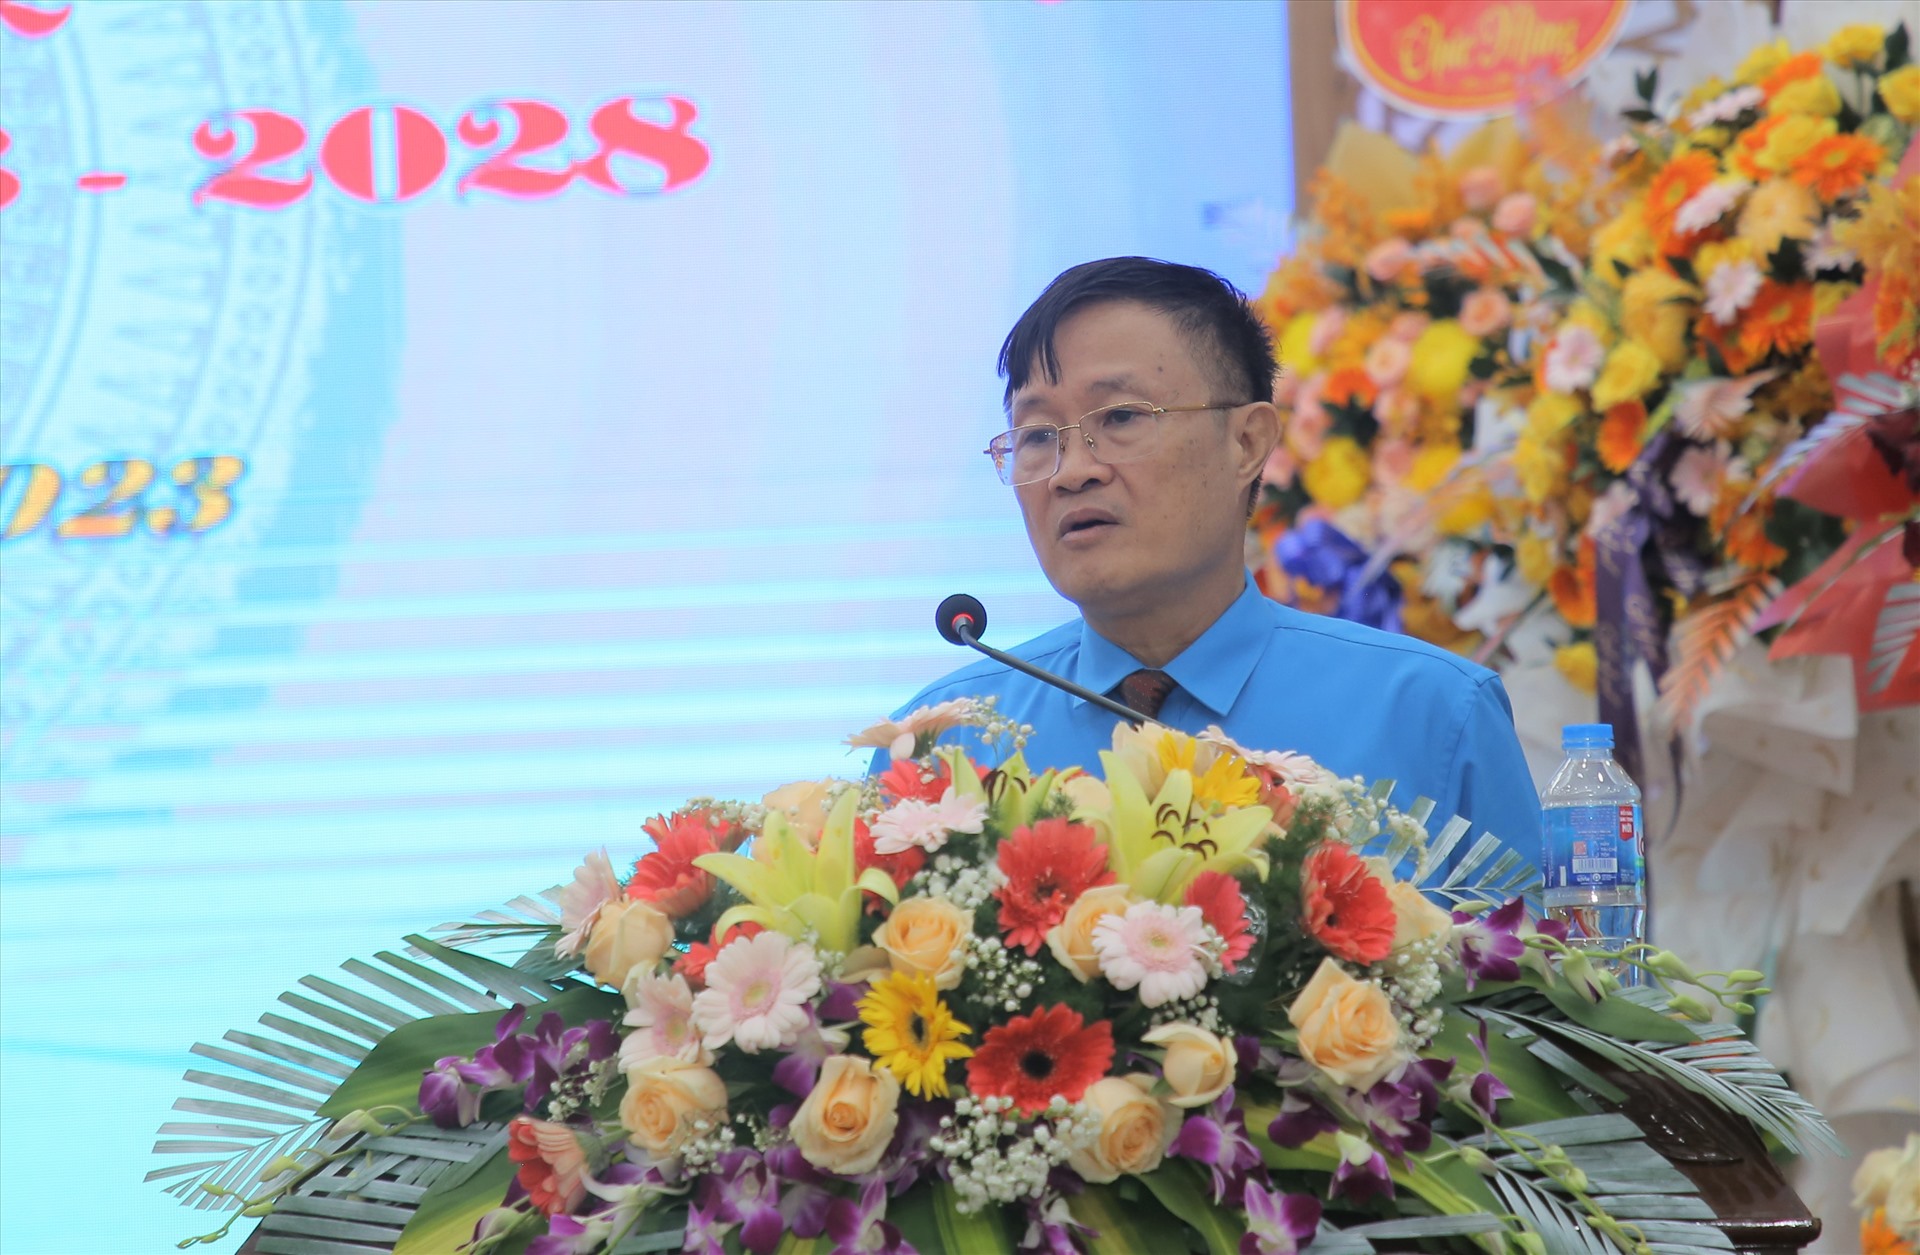 Ông Vũ Ngọc Chính, Phó Chủ tịch Công đoàn ngành Xây dựng Việt Nam phát biểu tại đại hội. Ảnh: Hưng Thơ.